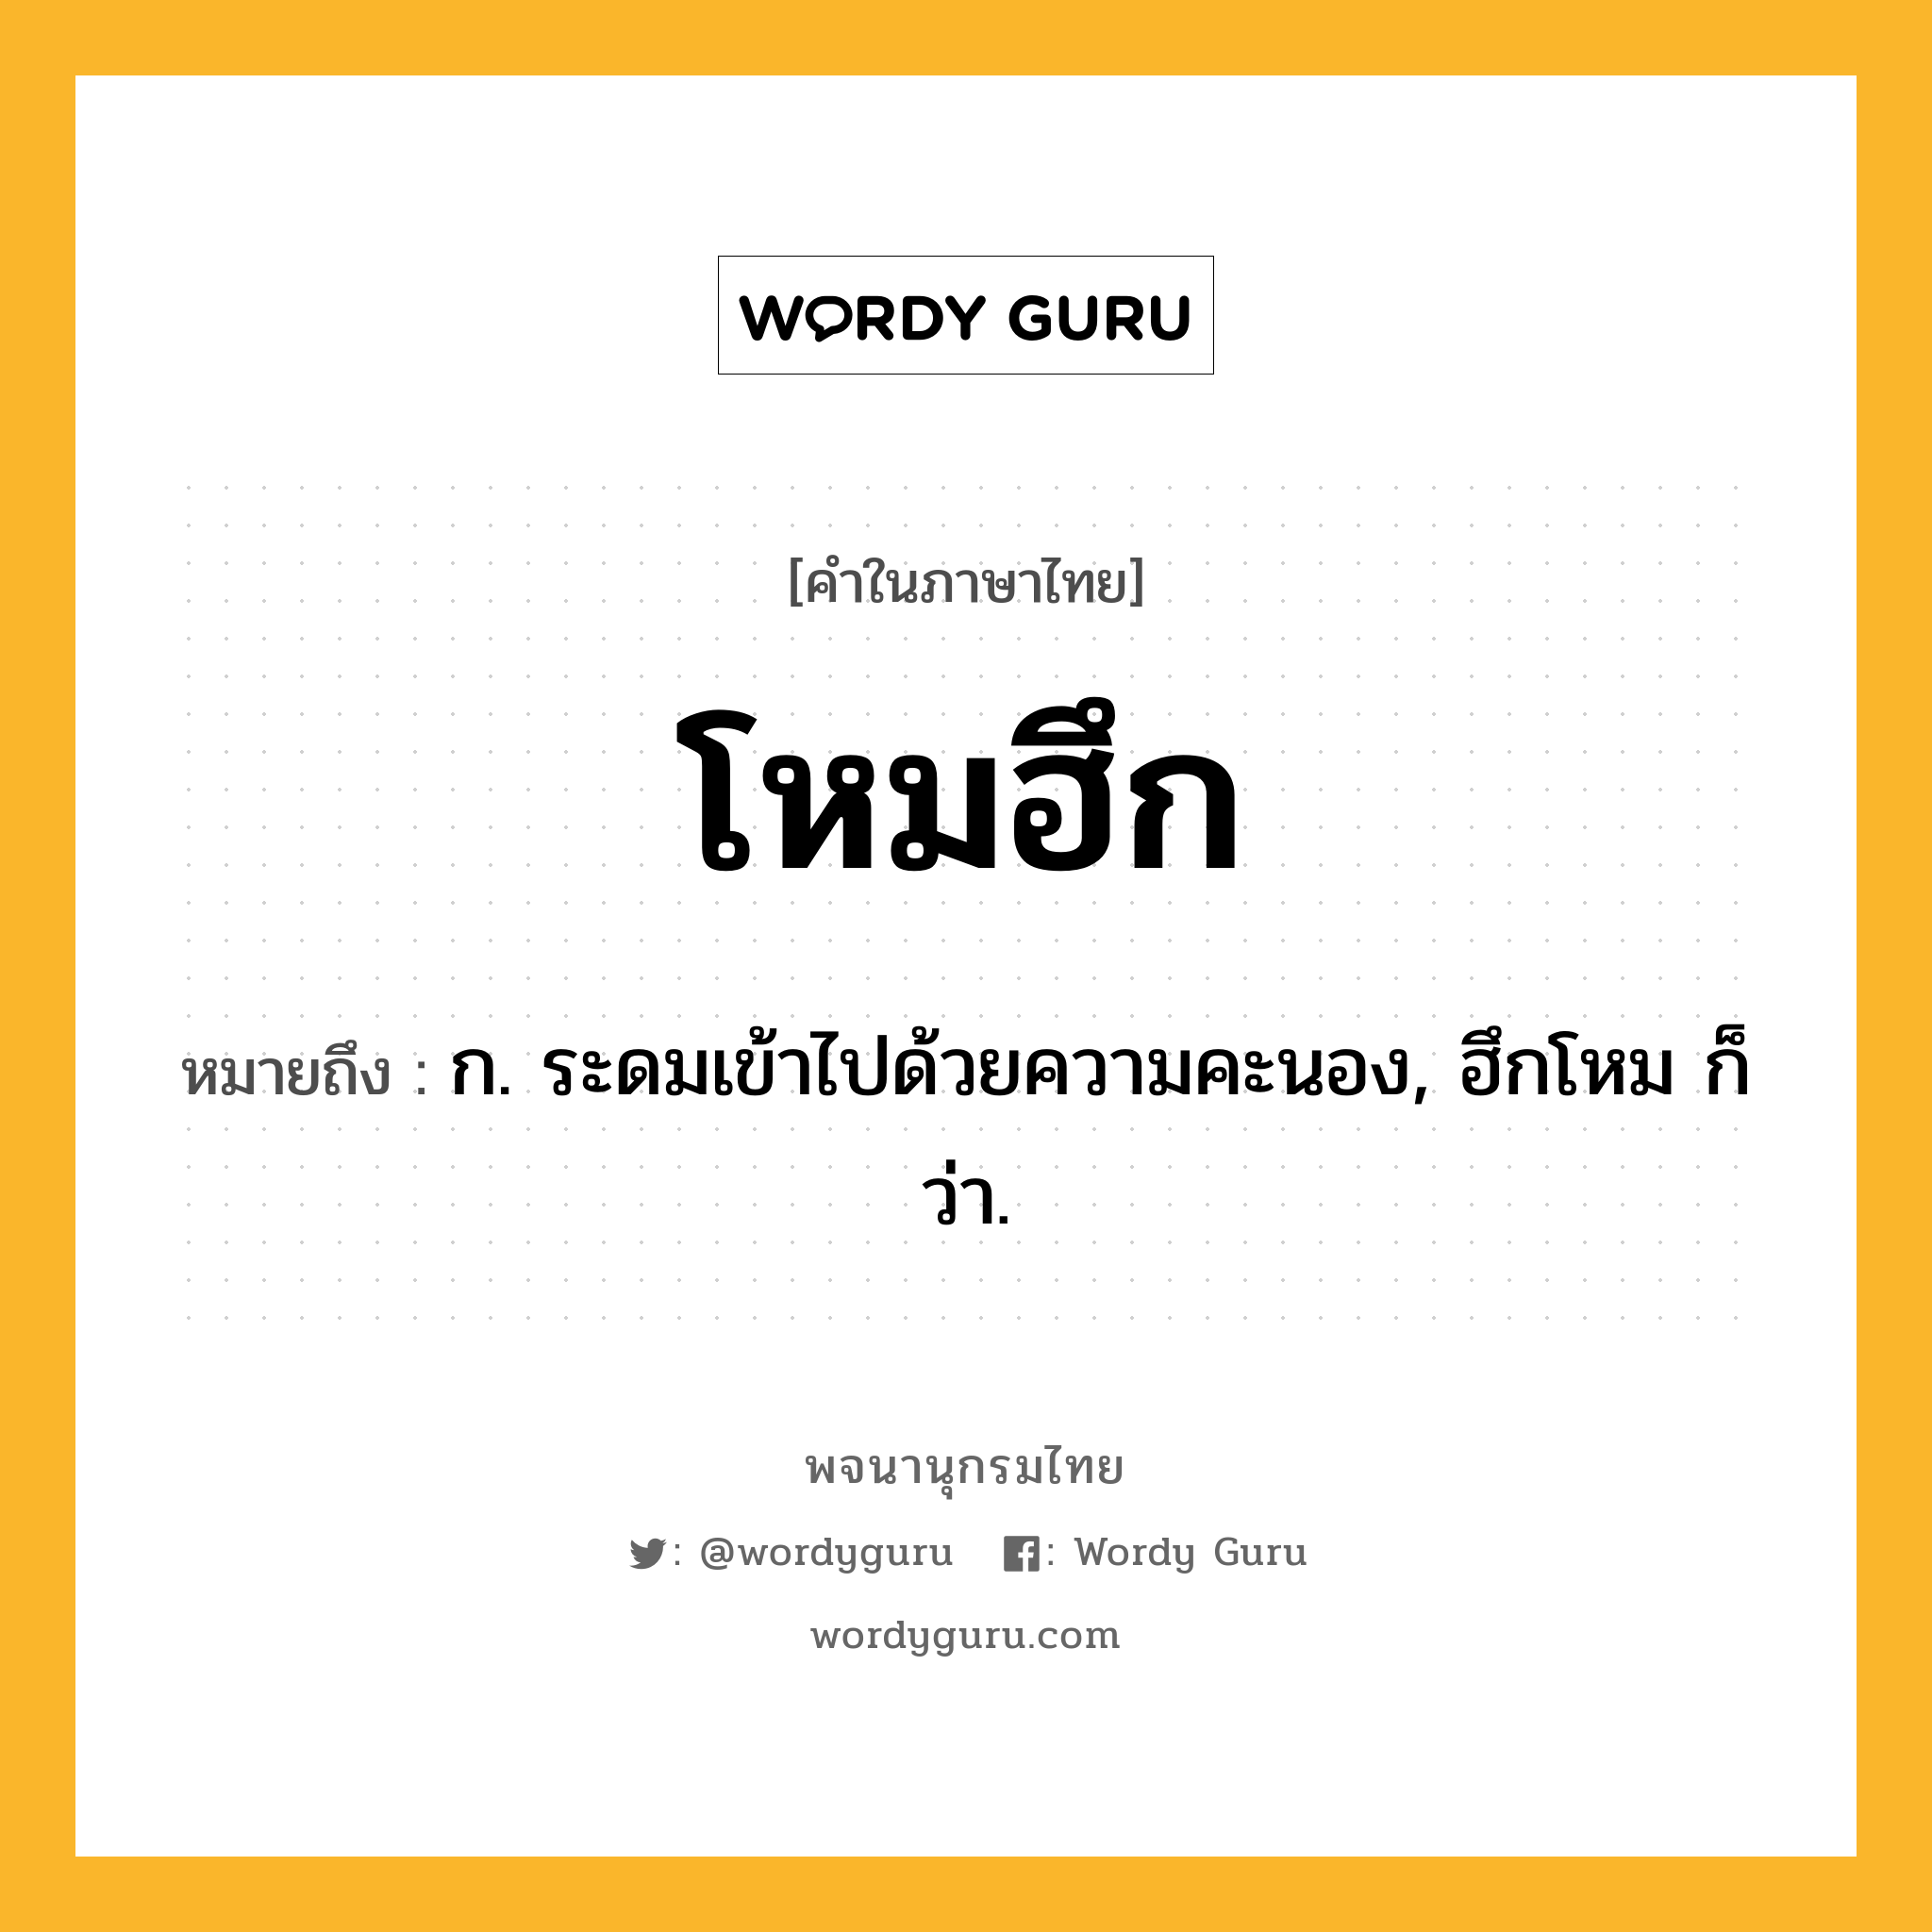 โหมฮึก หมายถึงอะไร?, คำในภาษาไทย โหมฮึก หมายถึง ก. ระดมเข้าไปด้วยความคะนอง, ฮึกโหม ก็ว่า.